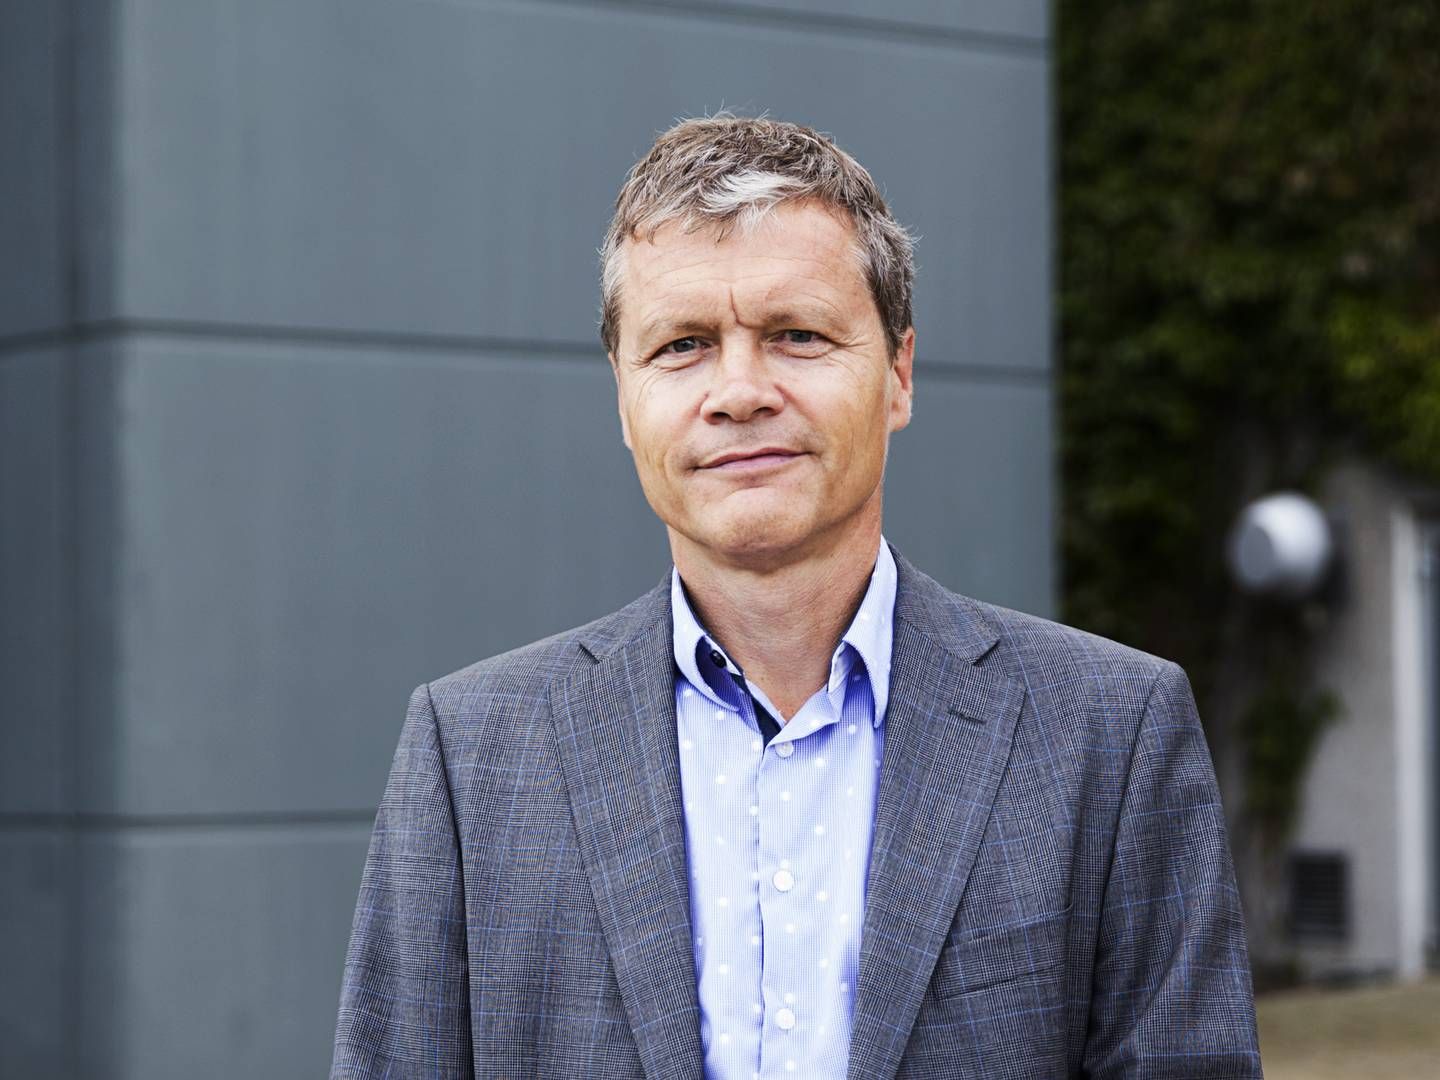 Michael Nellemann Pedersen, chief investment officer at PKA | Photo: Gregers Tycho / Ritzau Scanpix